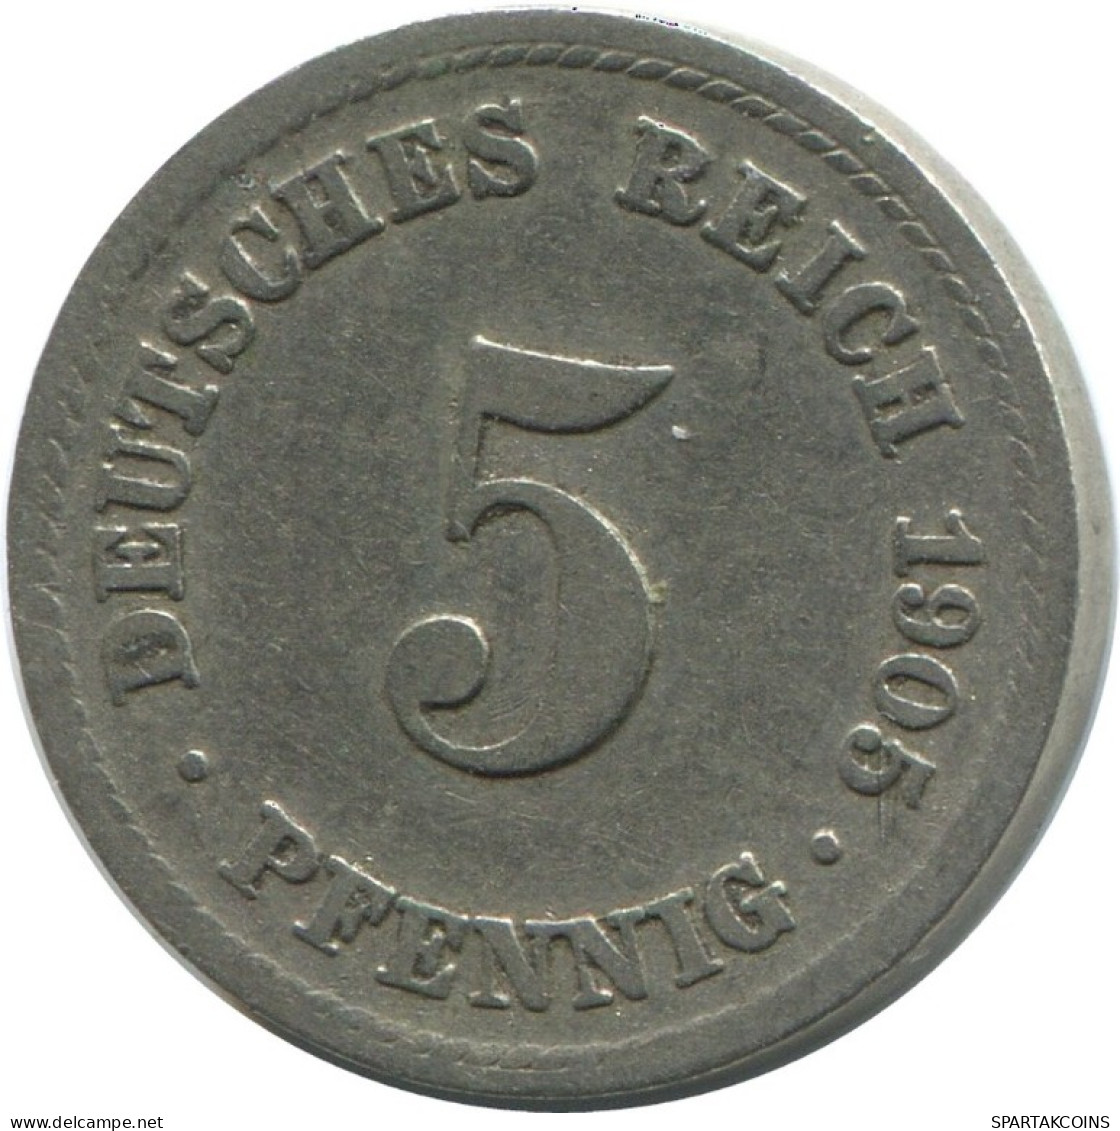 5 PFENNIG 1905 F DEUTSCHLAND Münze GERMANY #AD537.9.D.A - 5 Pfennig